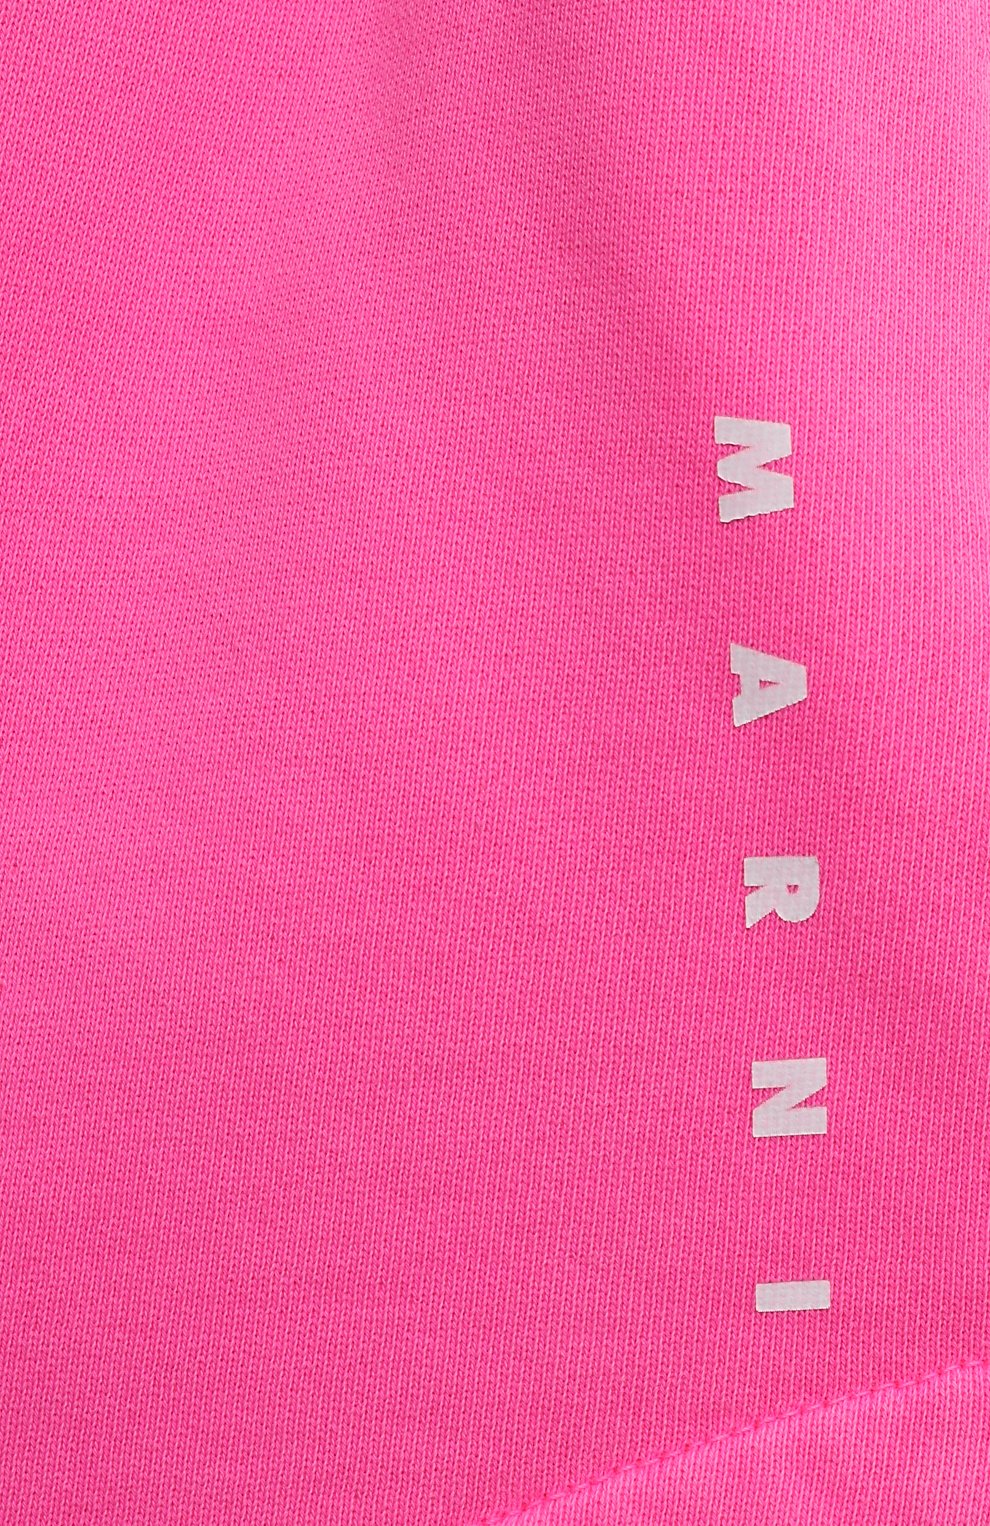 Детские хлопковые шорты MARNI розового цвета, арт. M00693/M00PD | Фото 3 (Материал внешний: Хлопок)